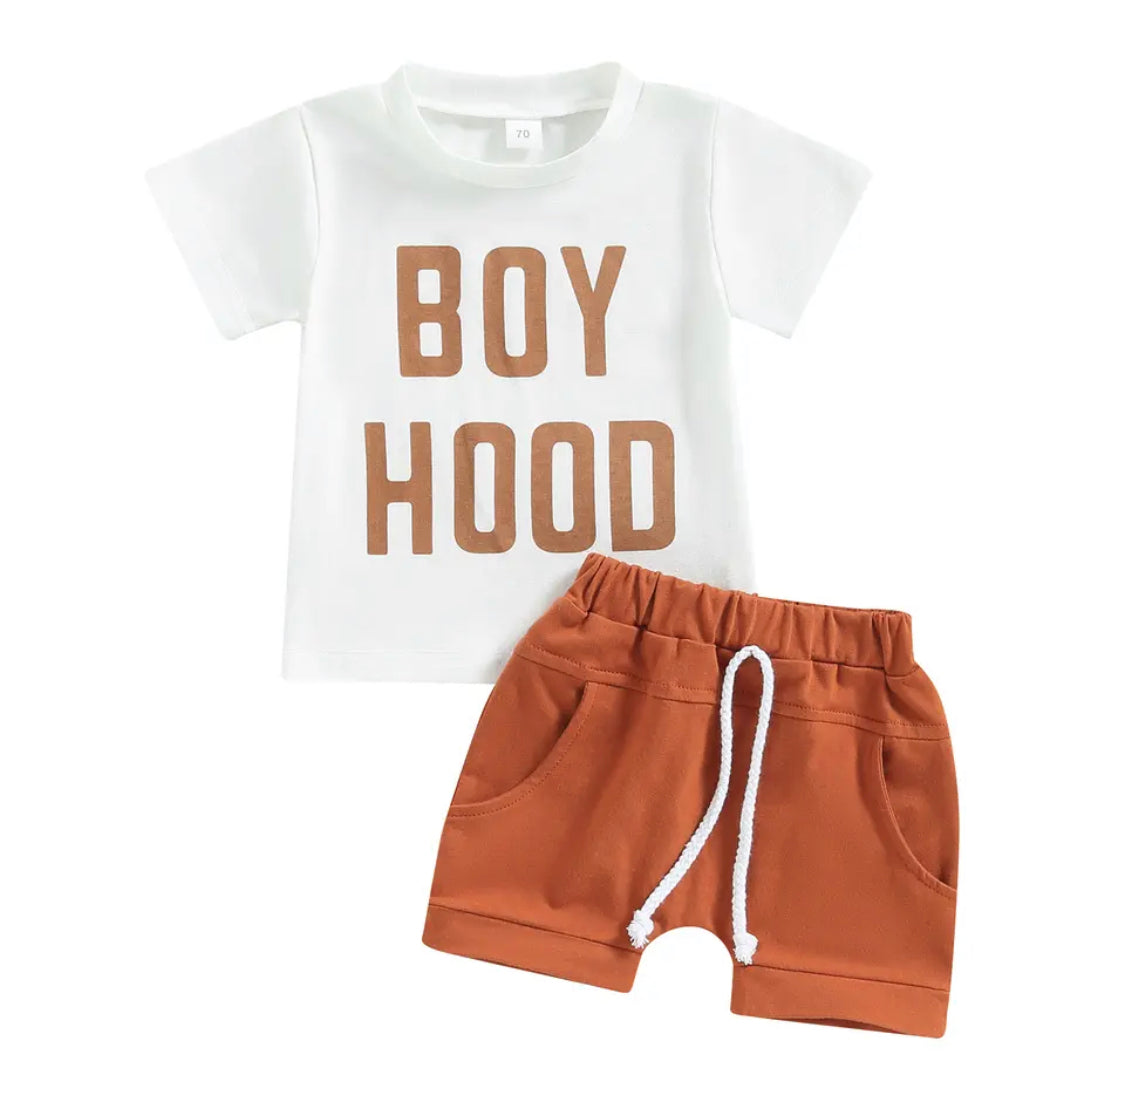 Summer Boy Hood Outfit